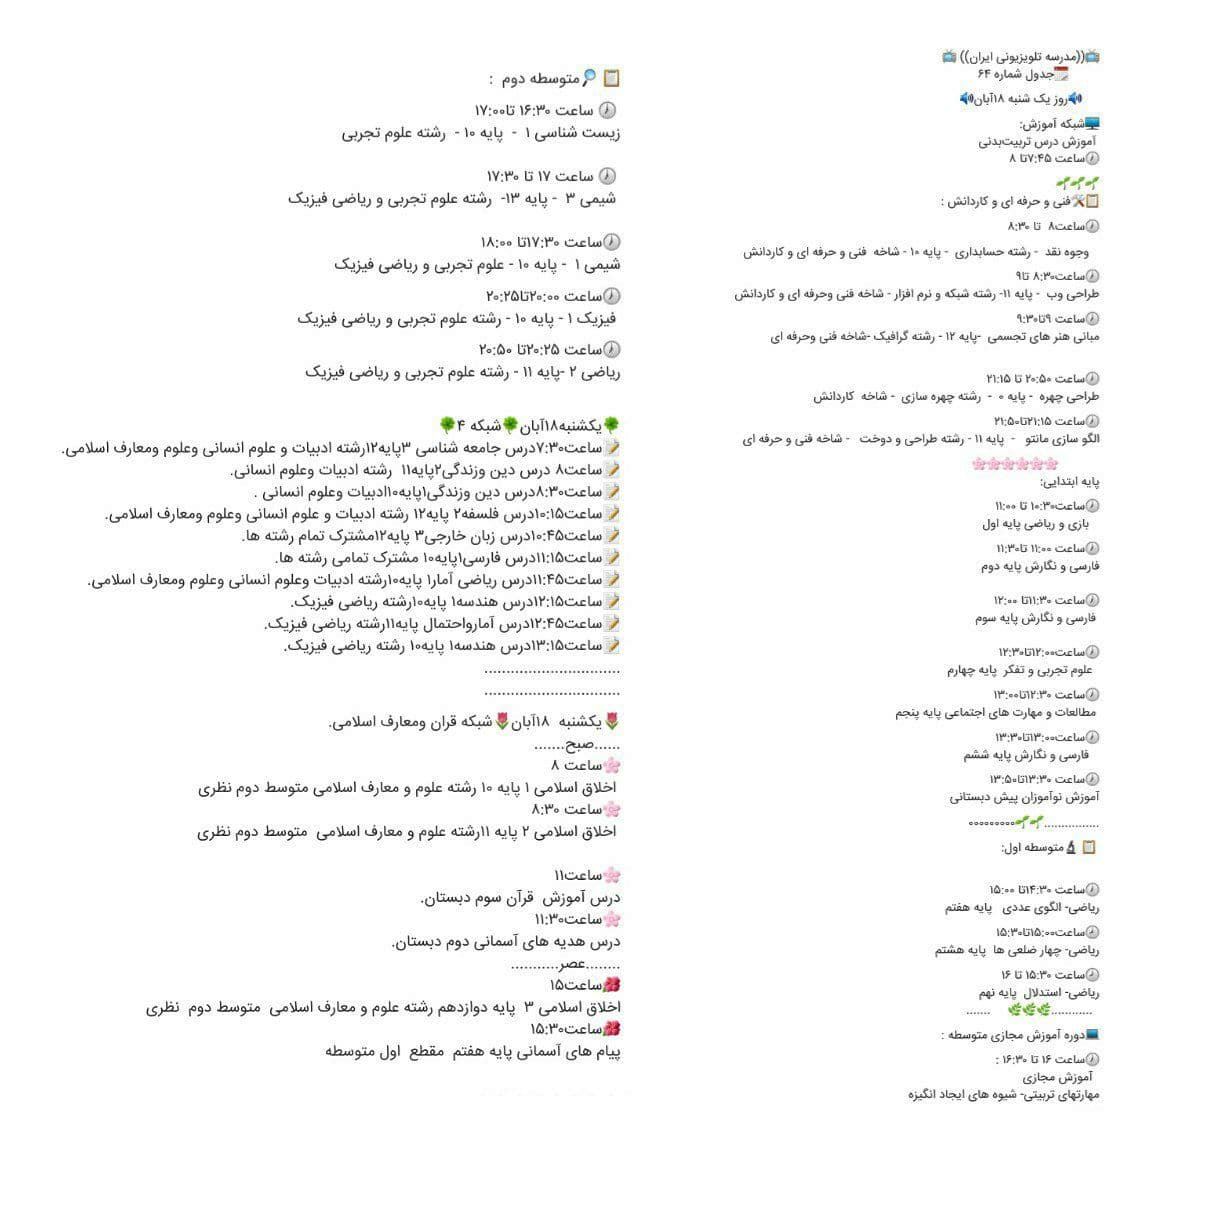 جدول پخش مدرسه تلویزیونی ایران 19 آبان 99/ فهرست برنامه های شبکه آموزش و چهار